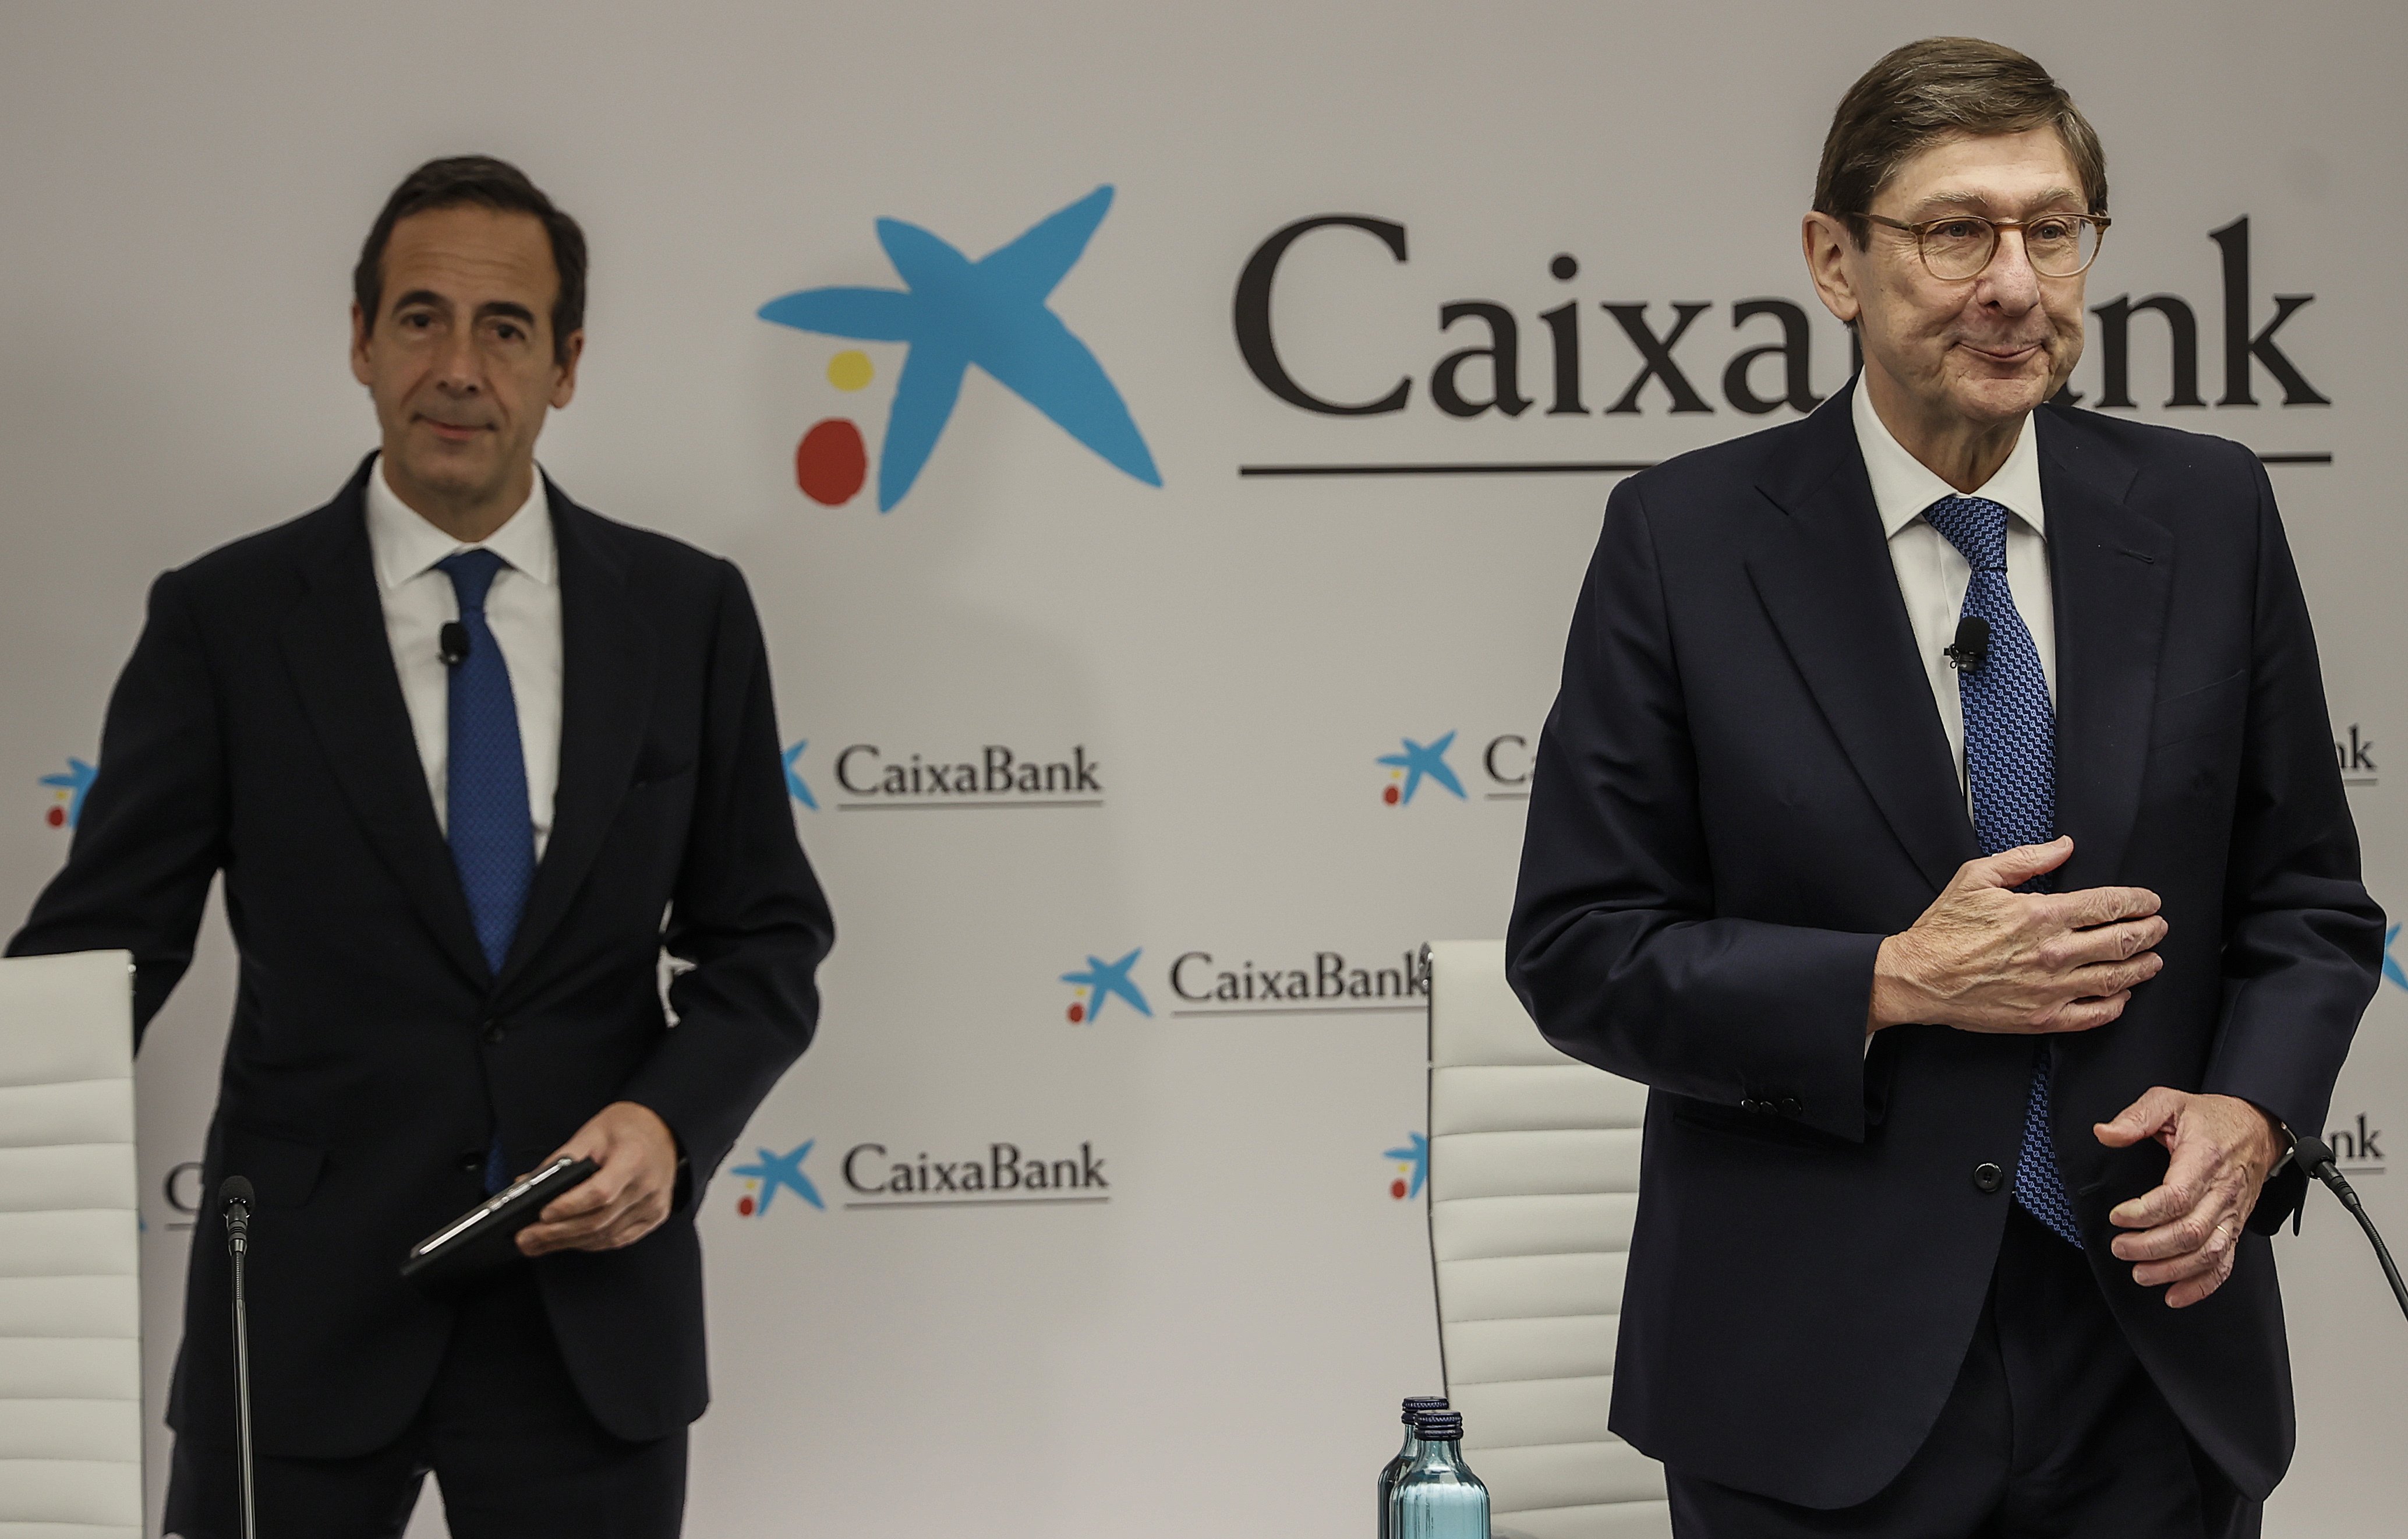 Goirigolzarri i Gortázar s'apujaran el sou un 5% després de guanyar 6 milions a CaixaBank